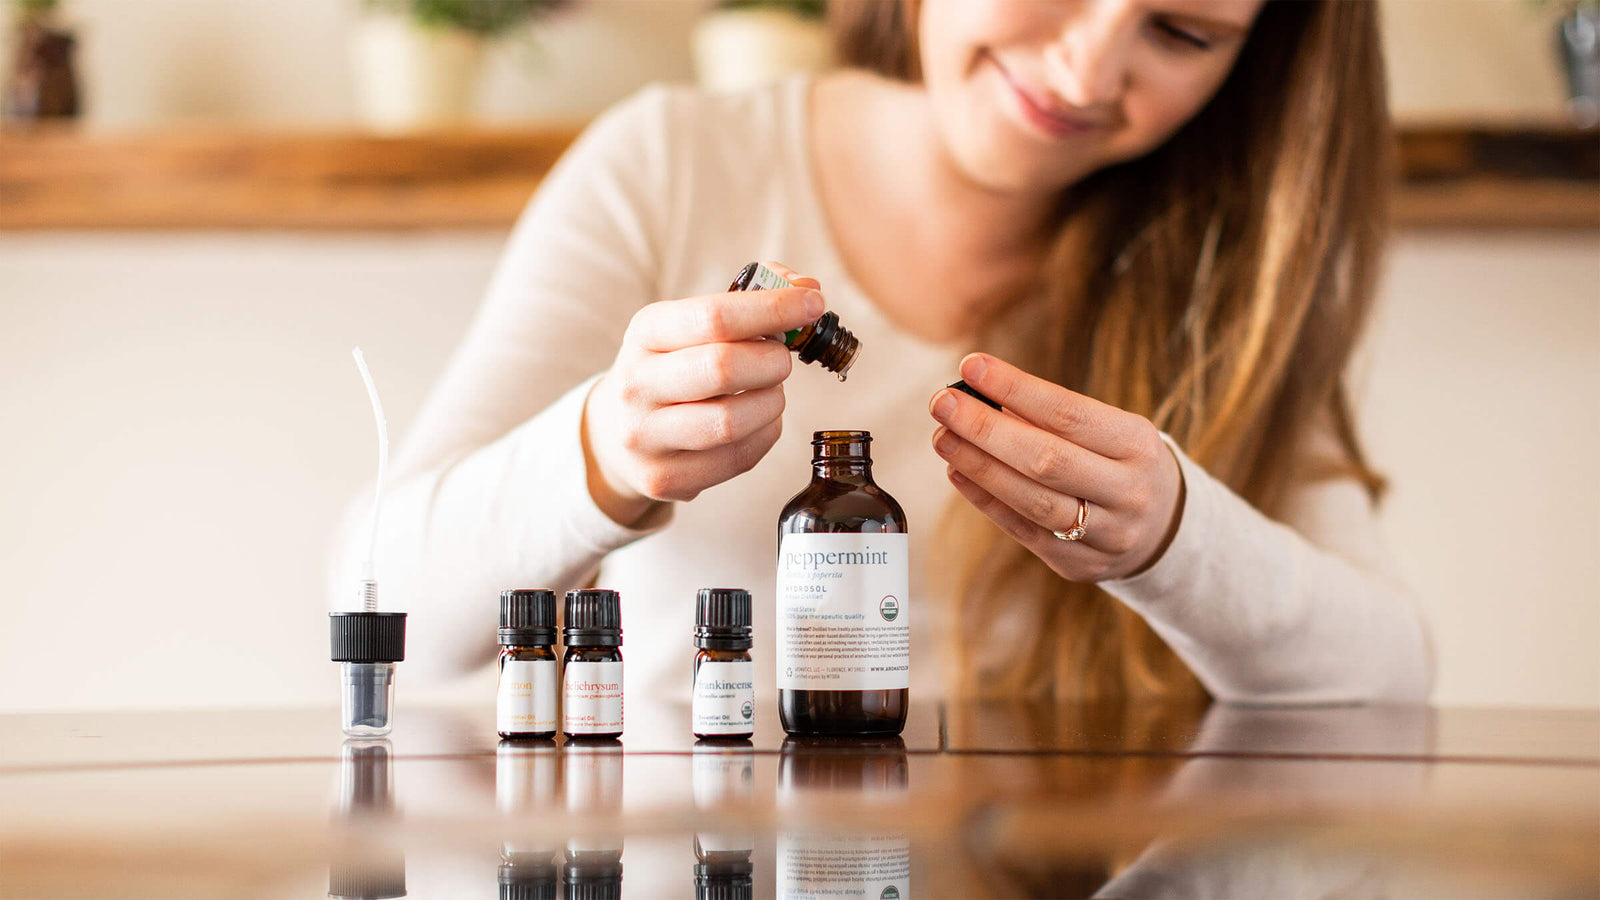 Blending essential oils based on aromas